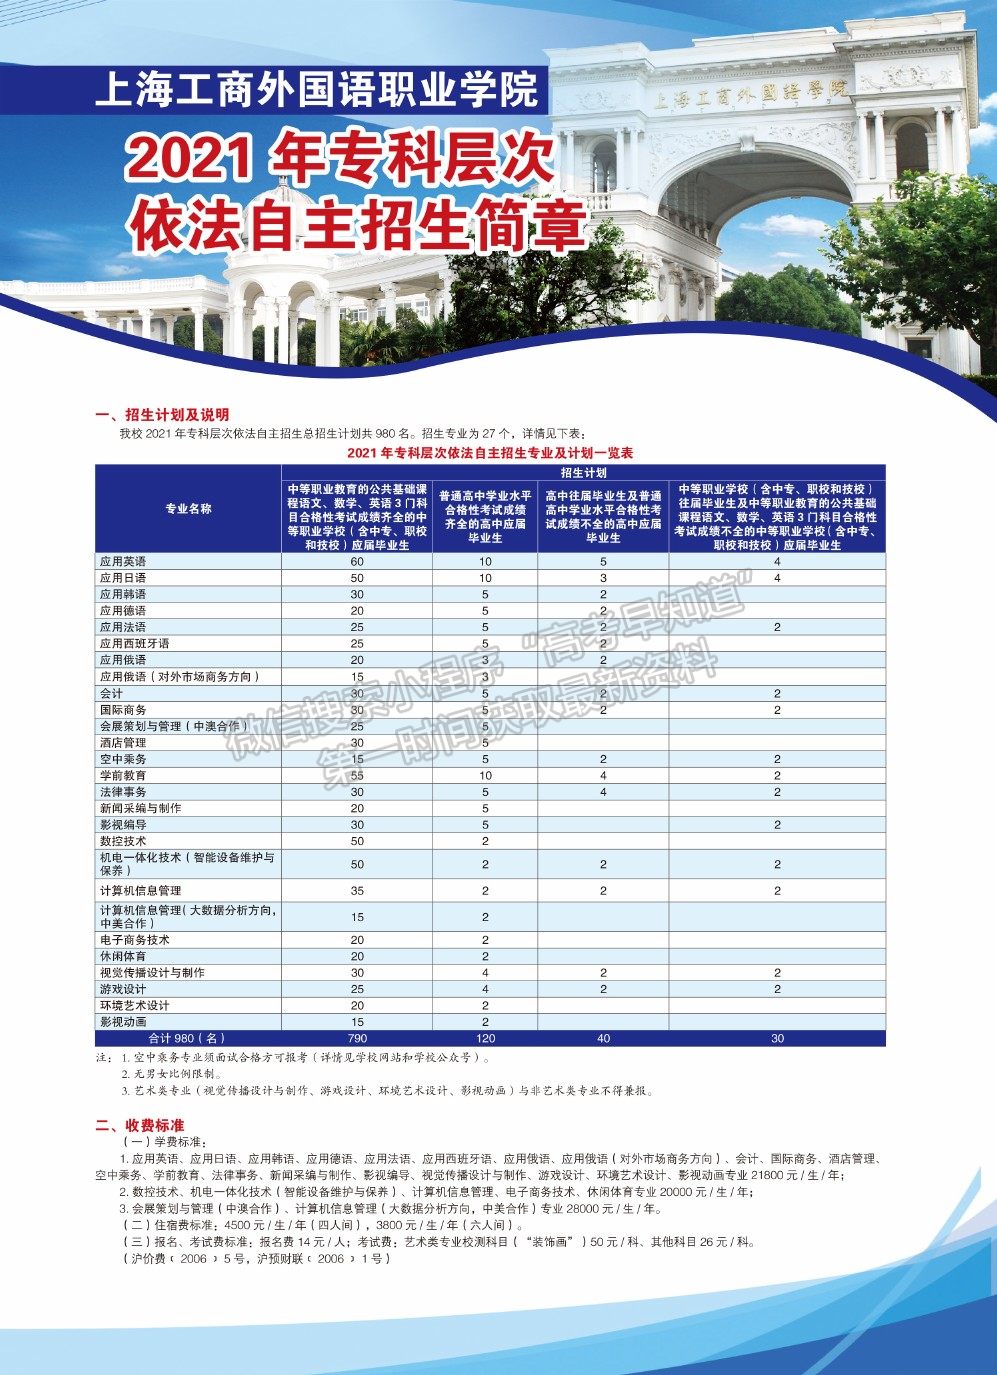 上海市工商外国语职业学院2021年专科层次依法自主招生简章